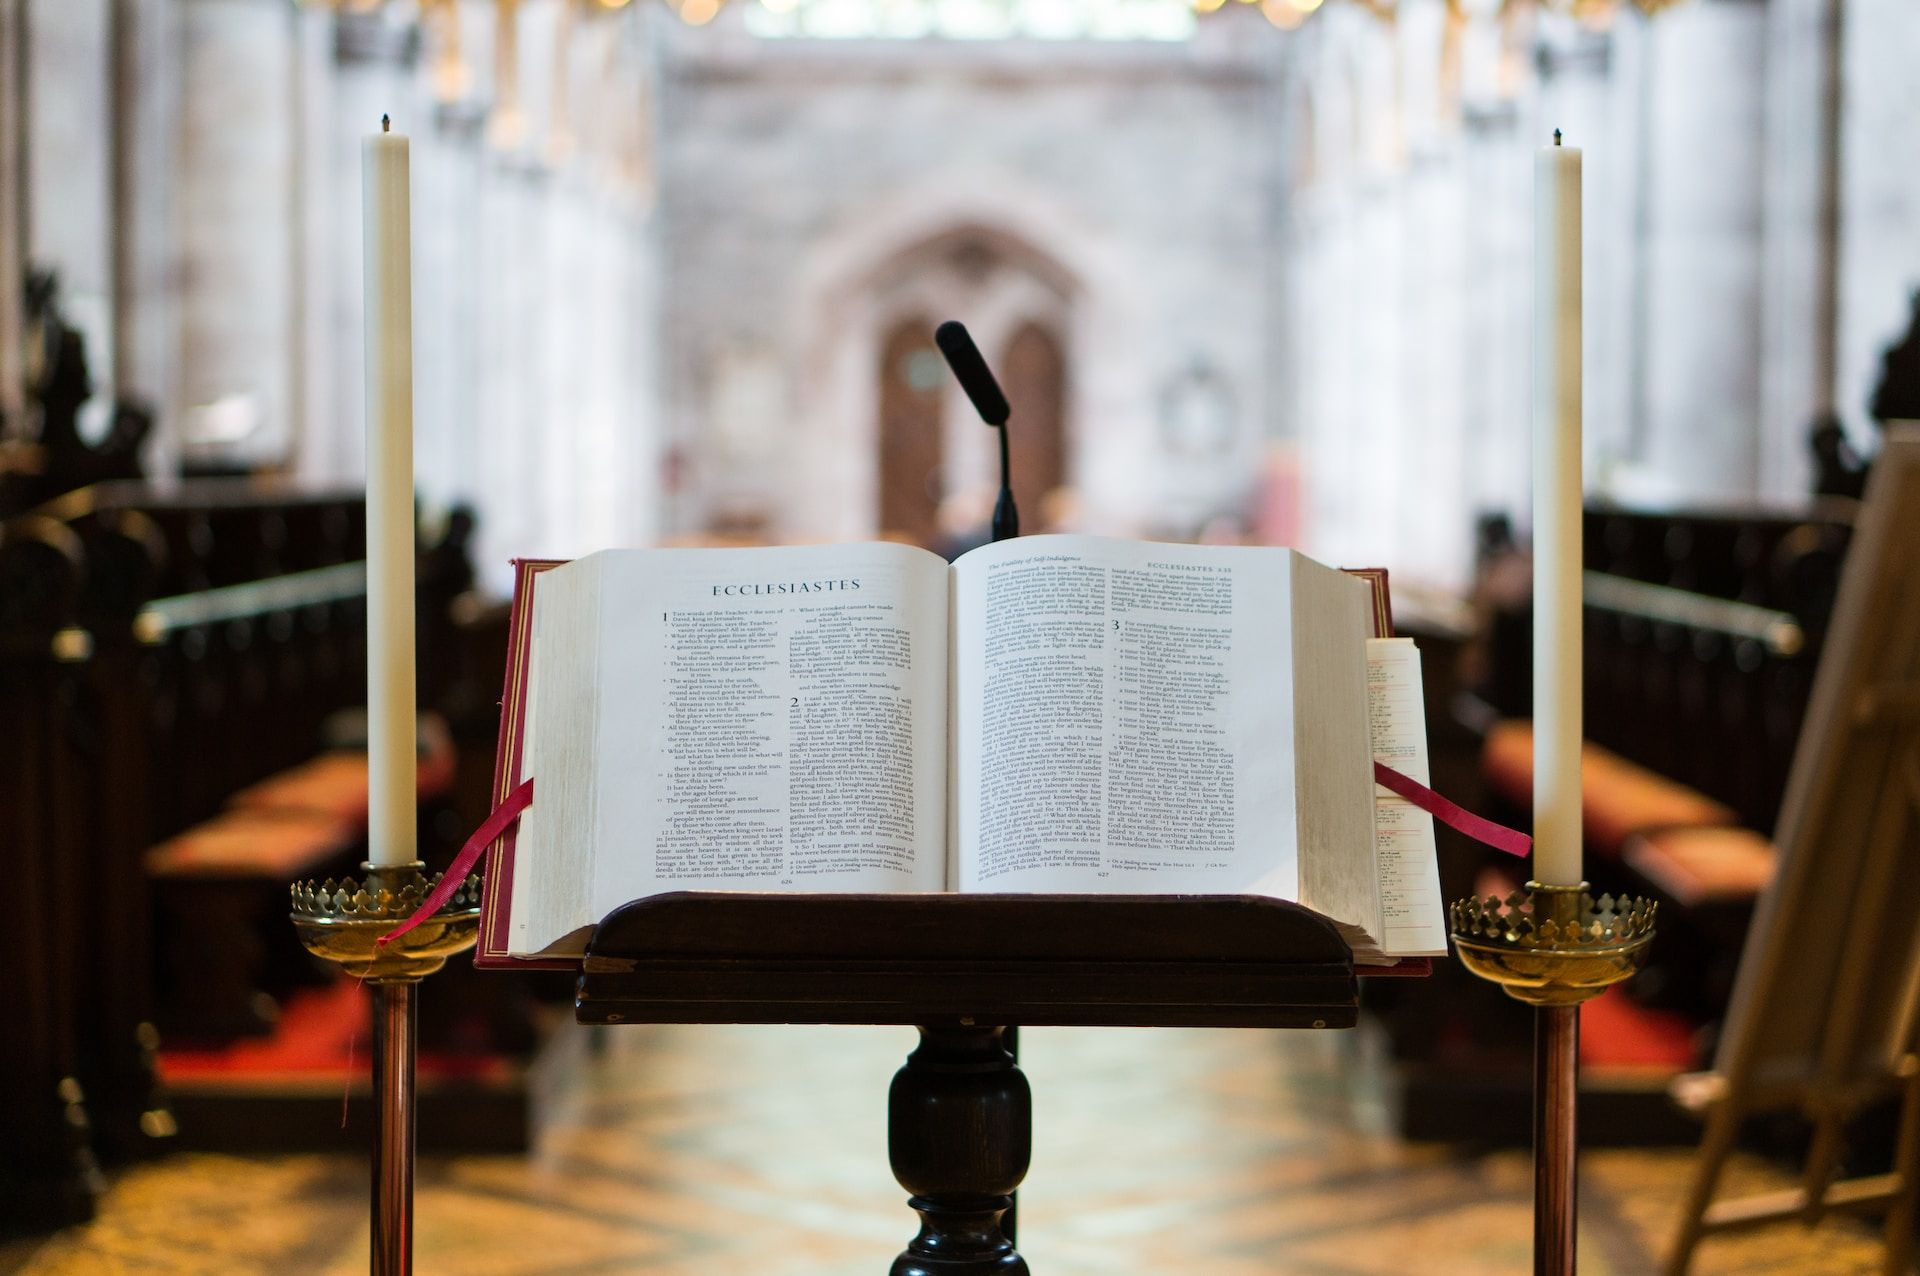 Une Bible sur un lutrin dans une église - Photo by Stephen Radford on https://unsplash.com/fr/photos/photographie-de-mise-au-point-selective-ouverte-bible-sur-support-de-livre-86QxYjwq8LU